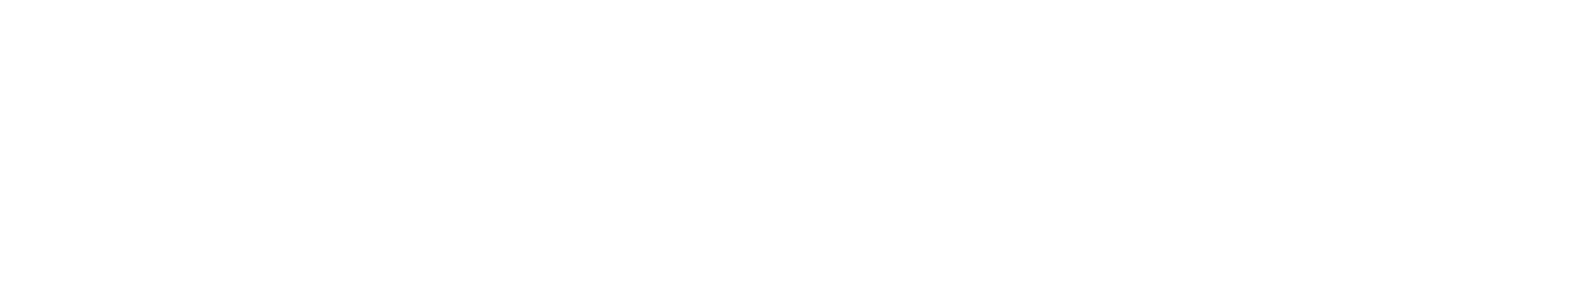 Weyerhaeuser
 Logo groß für dunkle Hintergründe (transparentes PNG)